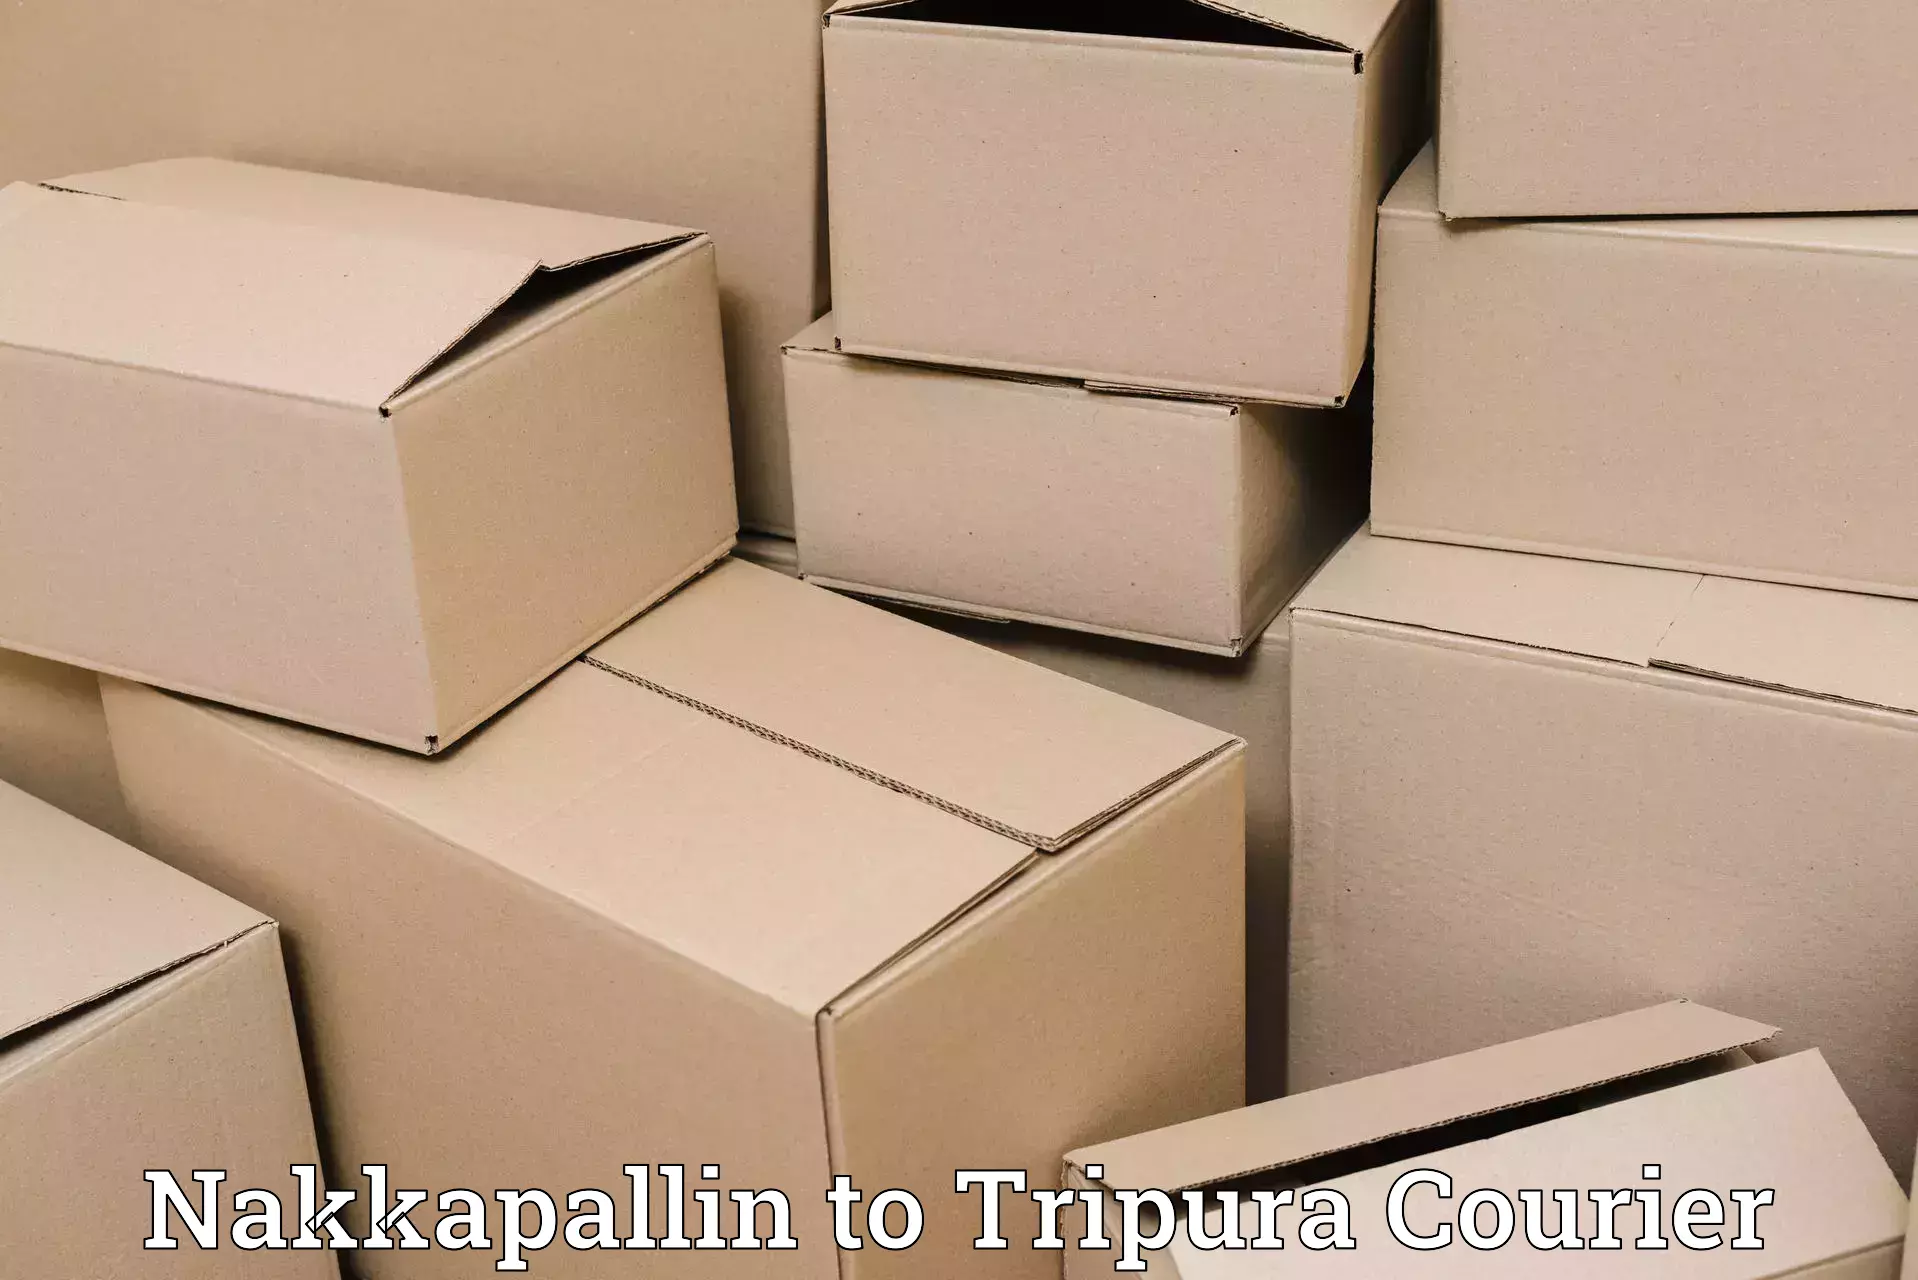 24-hour delivery options Nakkapallin to IIIT Agartala